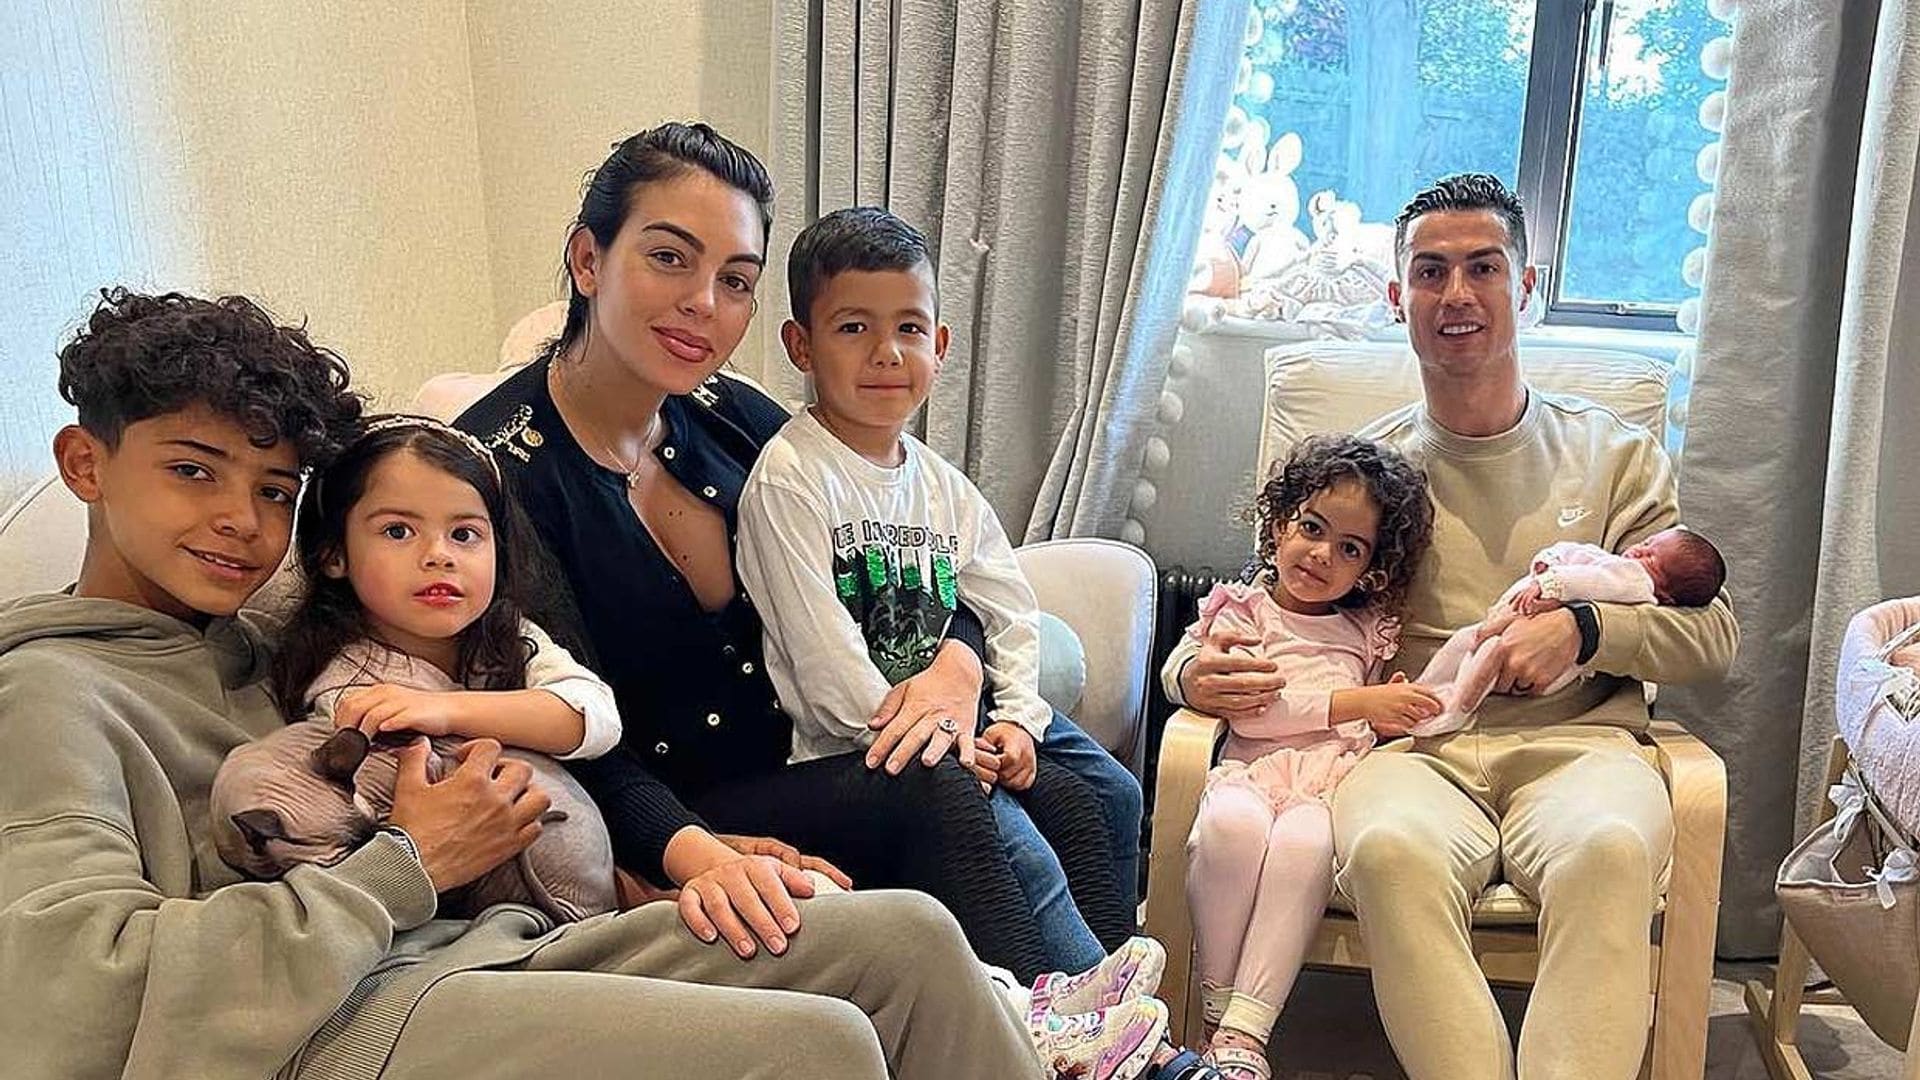 Georgina Rodríguez y Cristiano Ronaldo presentan a su hija recién nacida y agradecen el cariño recibido